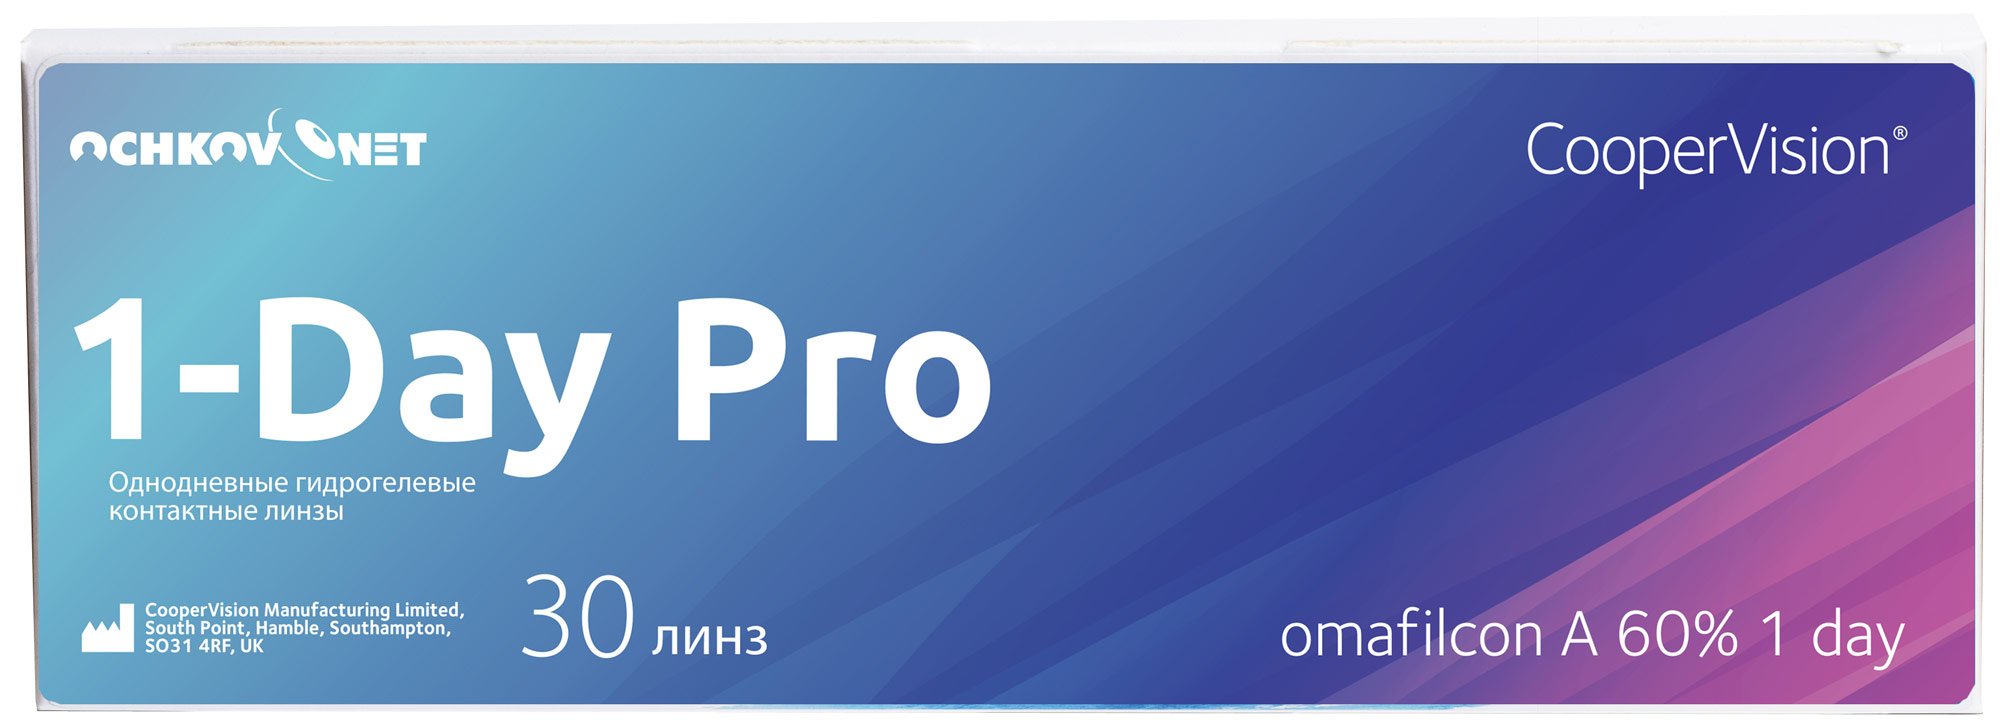 Контактные линзы Ochkov.Net 1-Day Pro 30 линз 8.7, -9.5  - купить